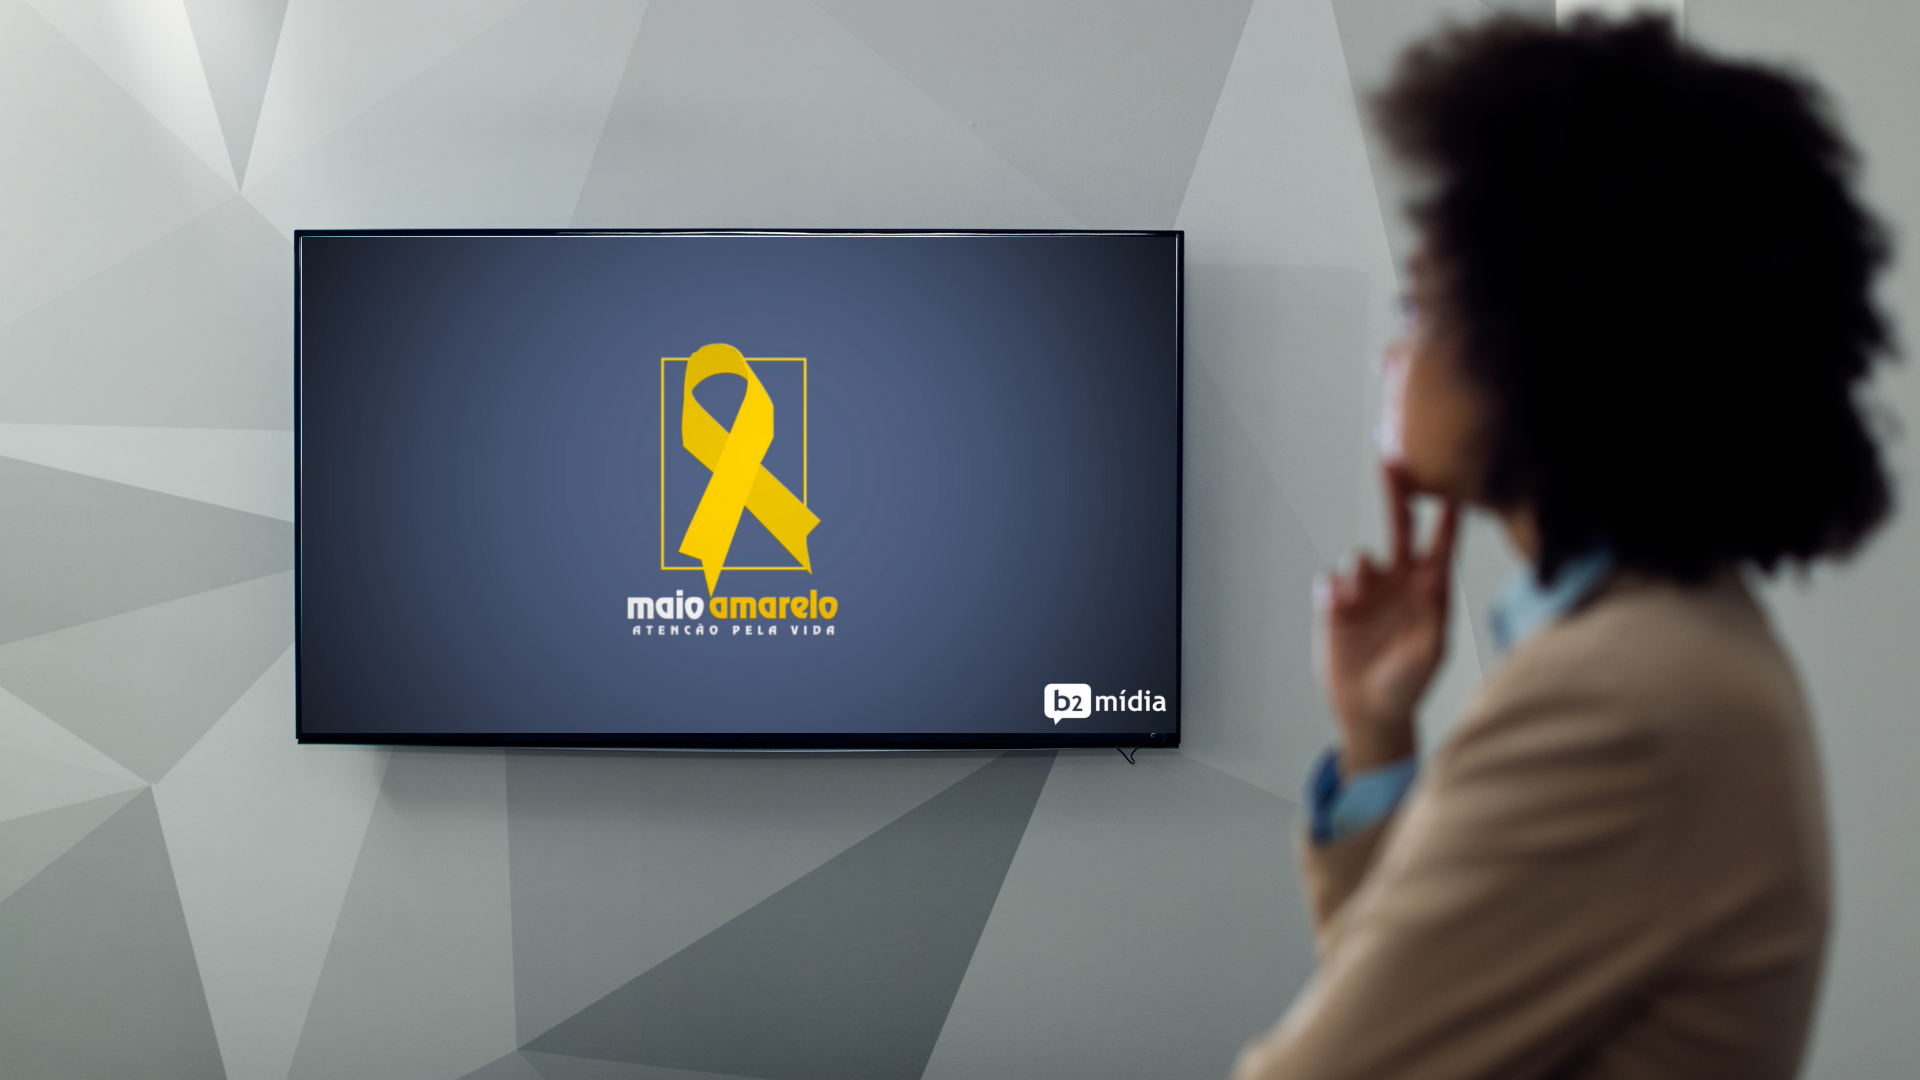 Maio Amarelo: Como conscientizar as pessoas usando a TV Corporativa - B2 Midia